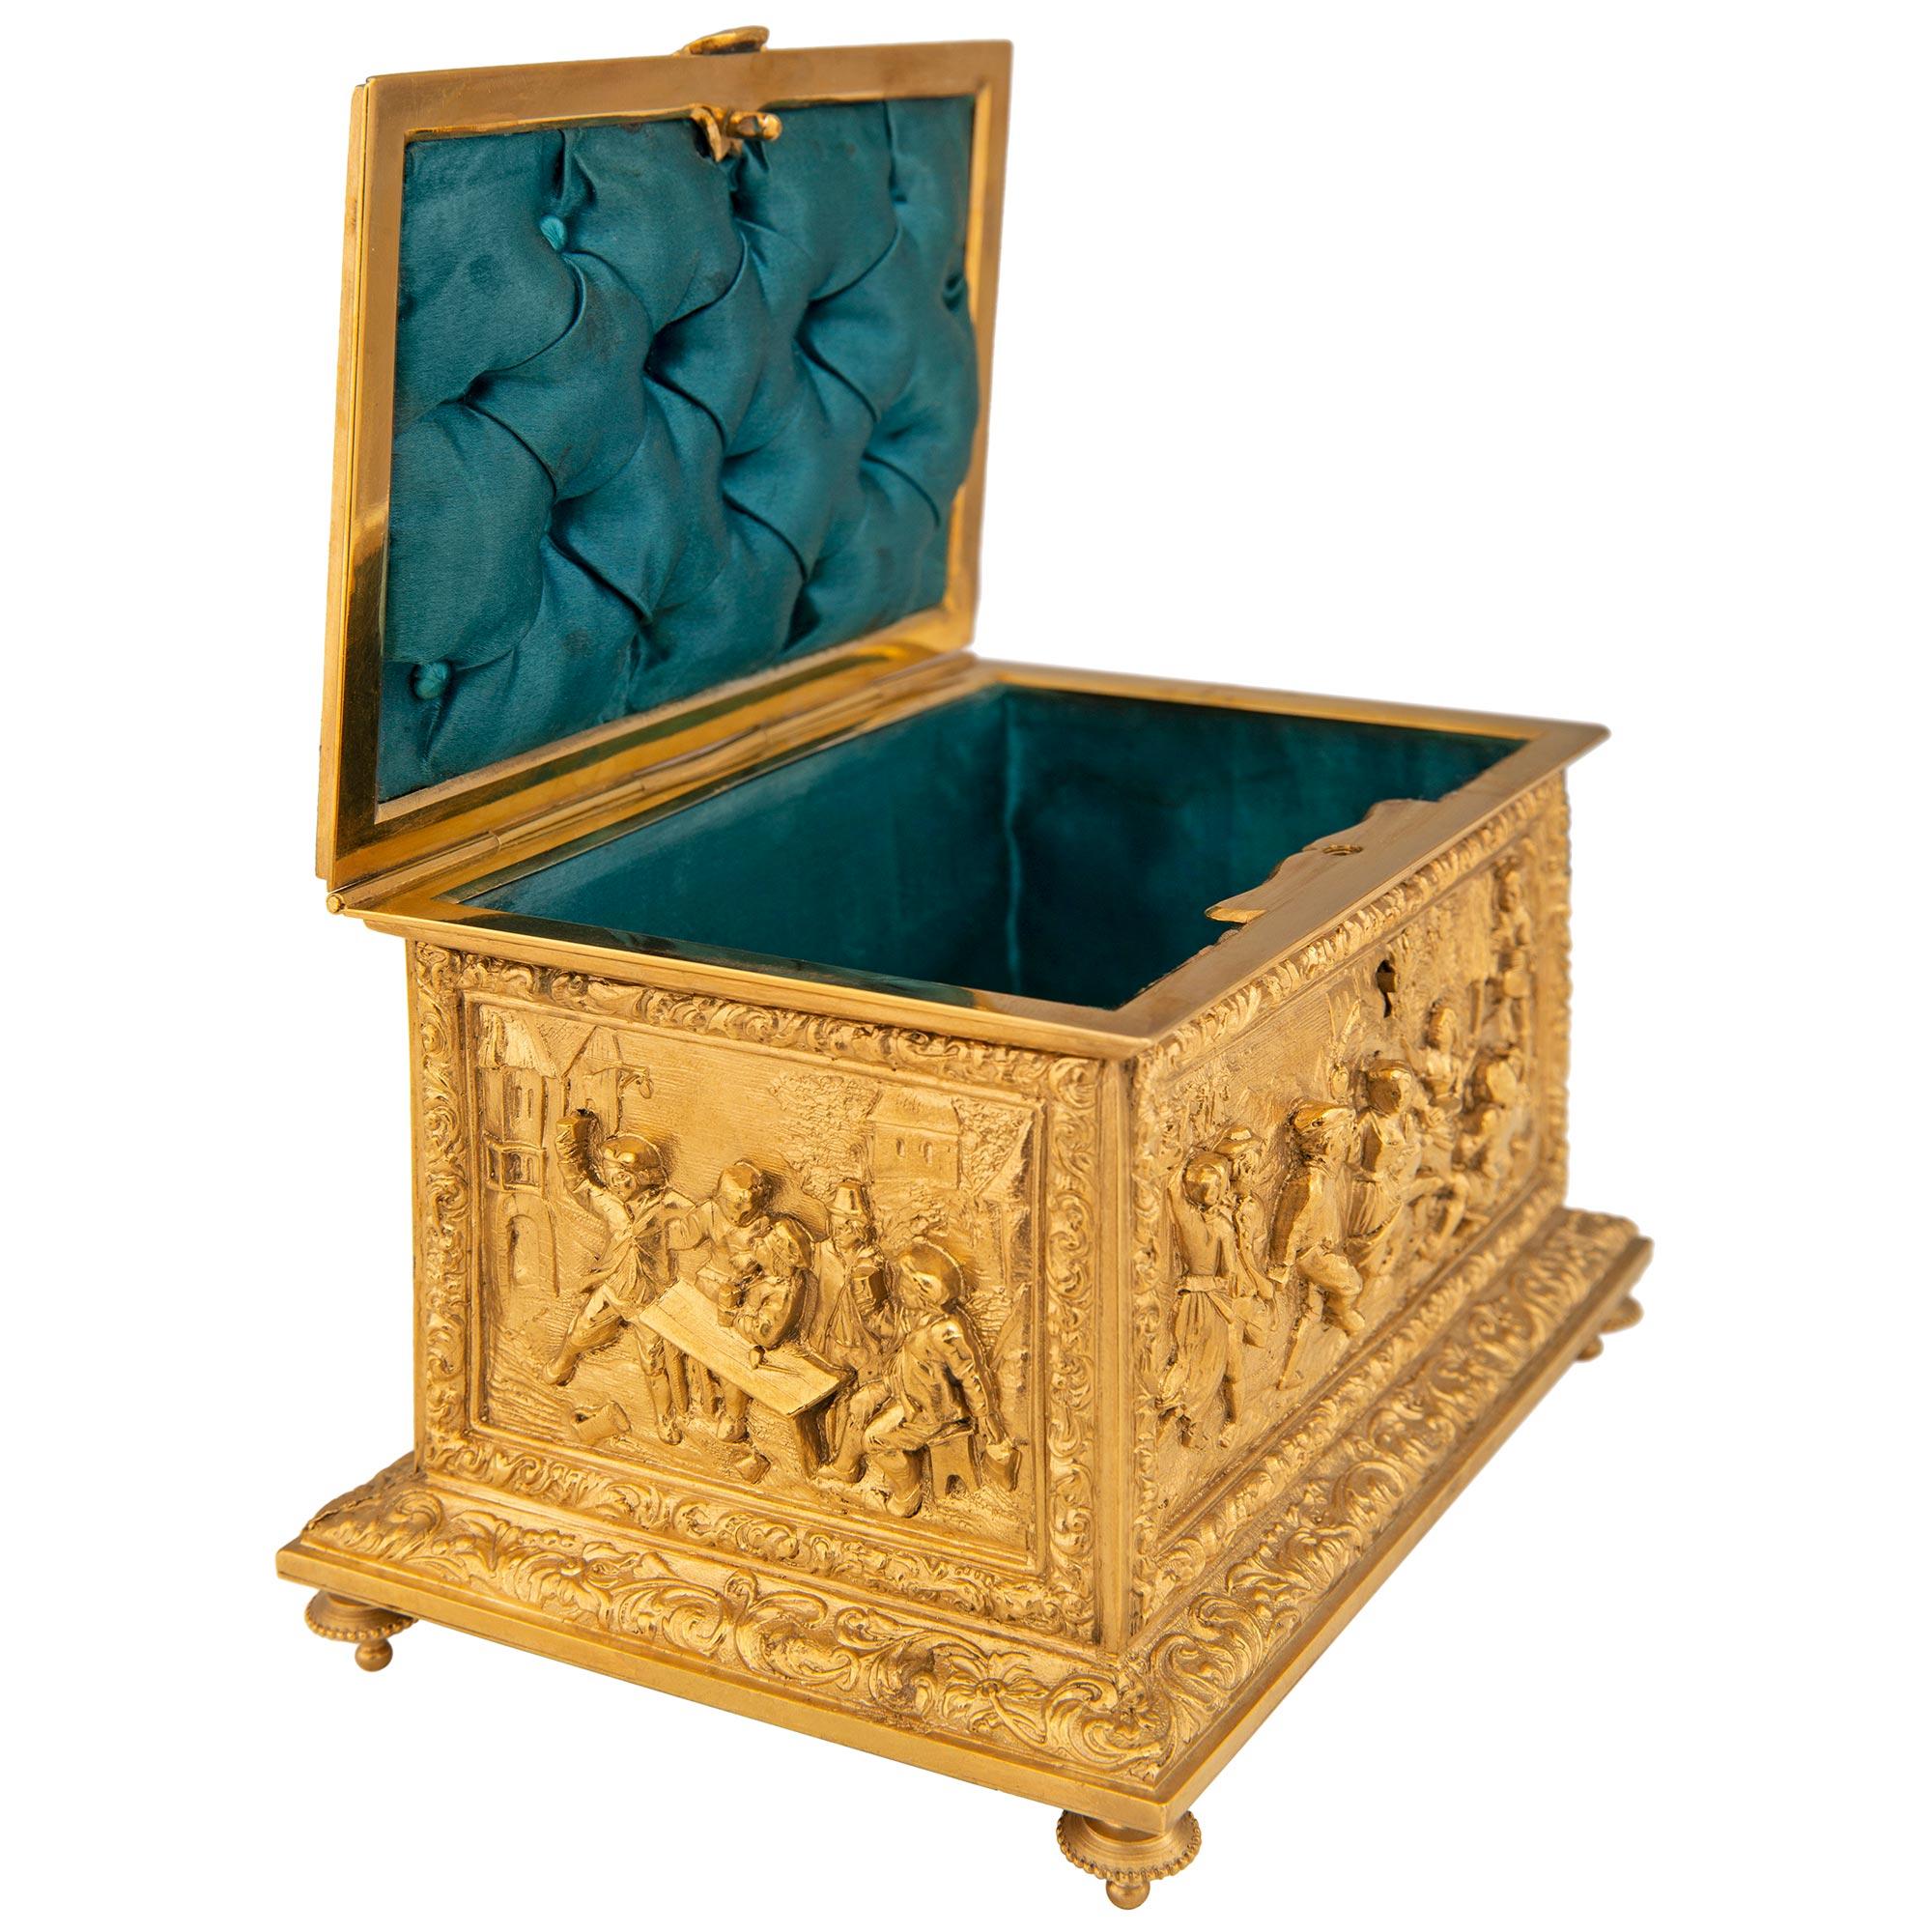 Étonnante boîte à bijoux en bronze doré de la Renaissance du XIXe siècle, signée A.B. Paris. Ce magnifique coffret est surélevé par quatre pieds en forme de topie montés sous une base rectangulaire ornée de rinceaux sur tous les côtés. Au-dessus de